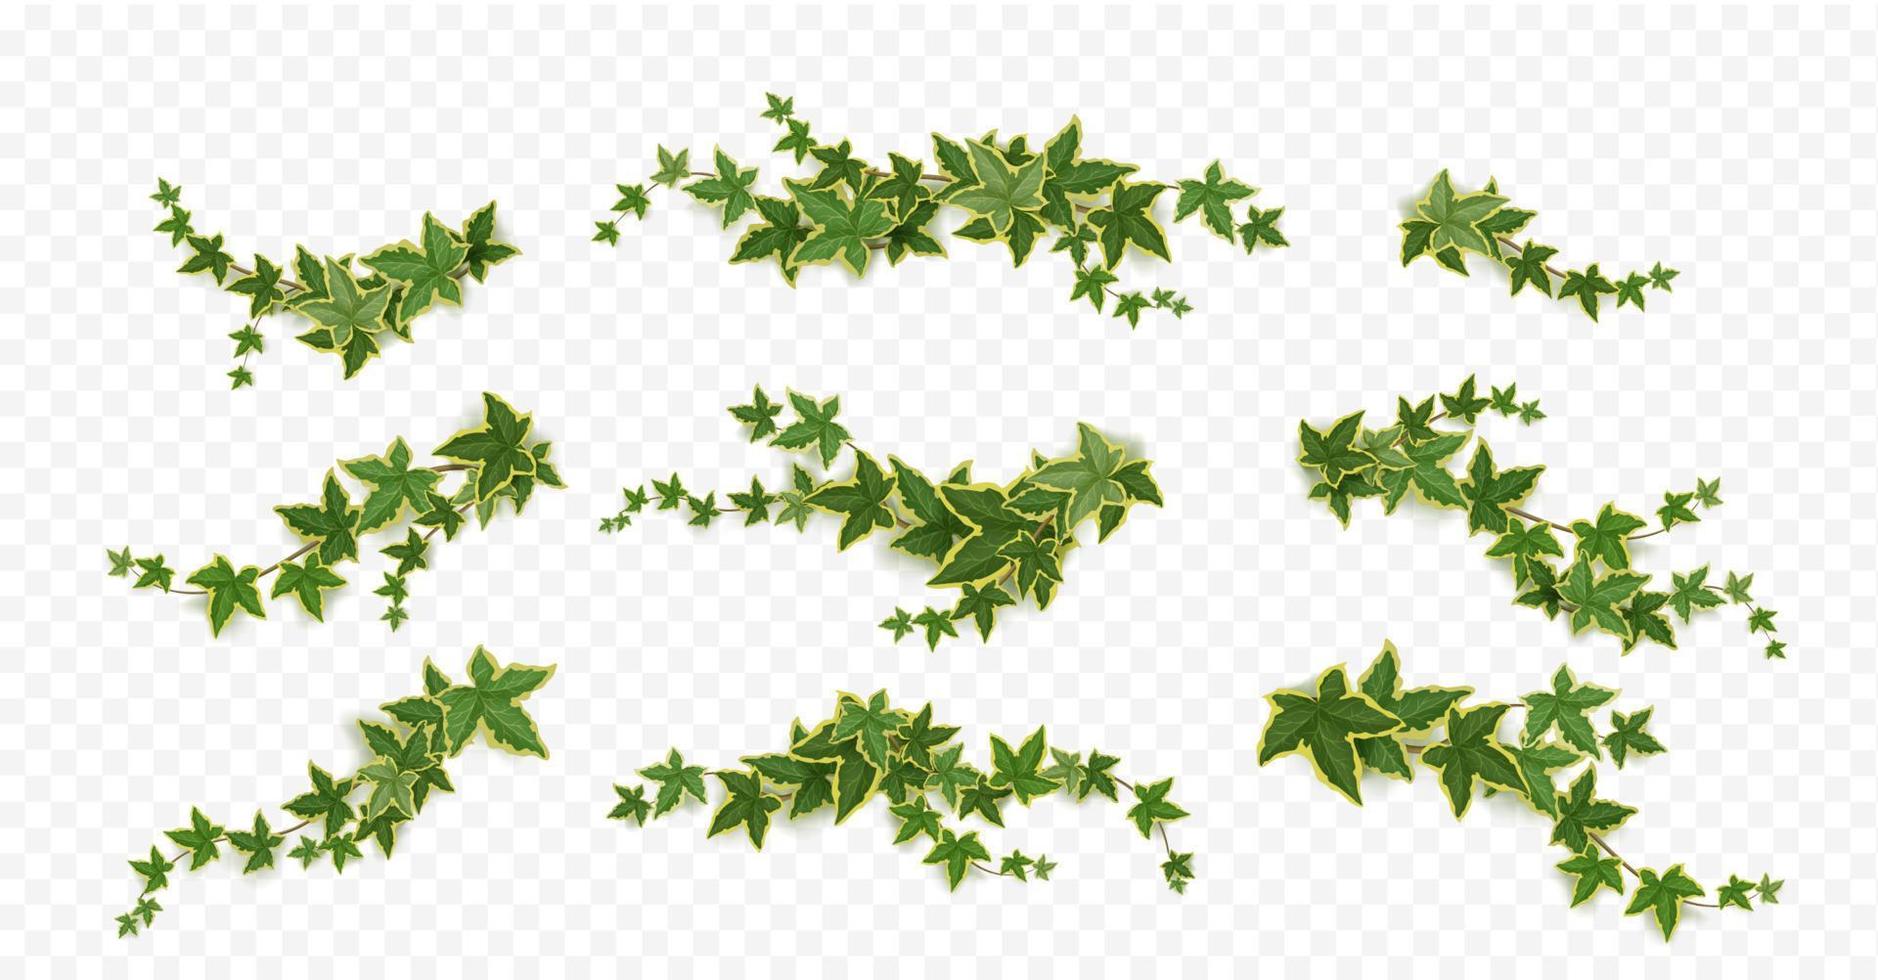 Efeu-Kletterreben mit grünen Pflanzenblättern vektor